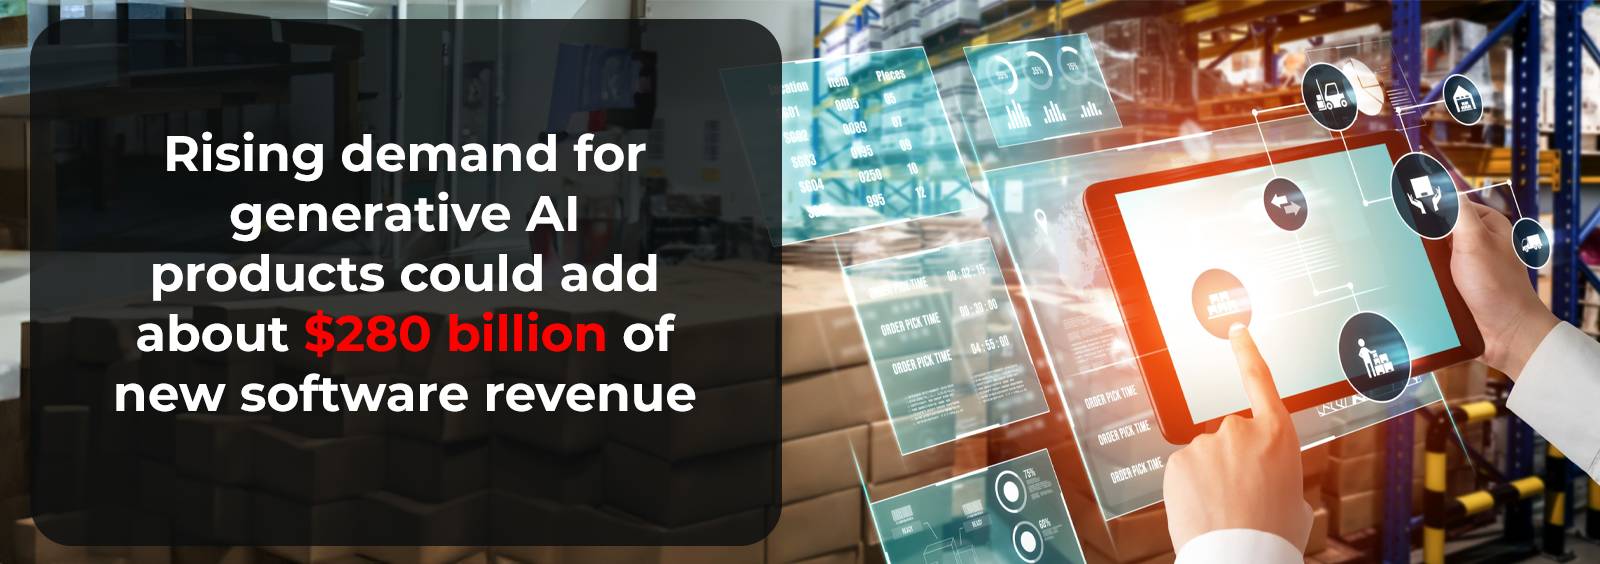 Cơ hội doanh thu mới nhờ sử dụng Generative AI trị giá 280 triệu USD